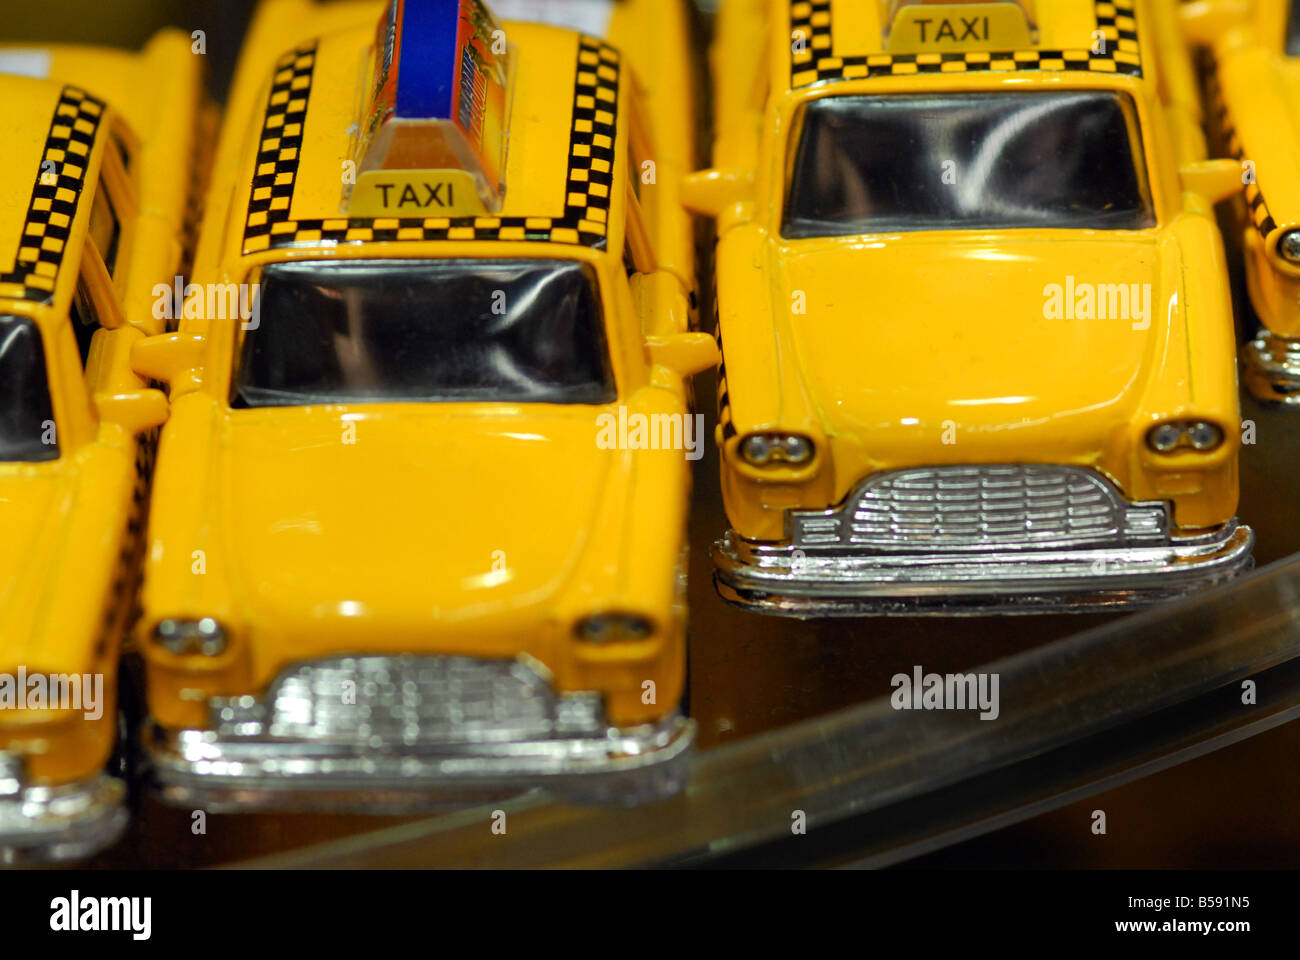 Taxi Cab NY Souvenir Stock Photo